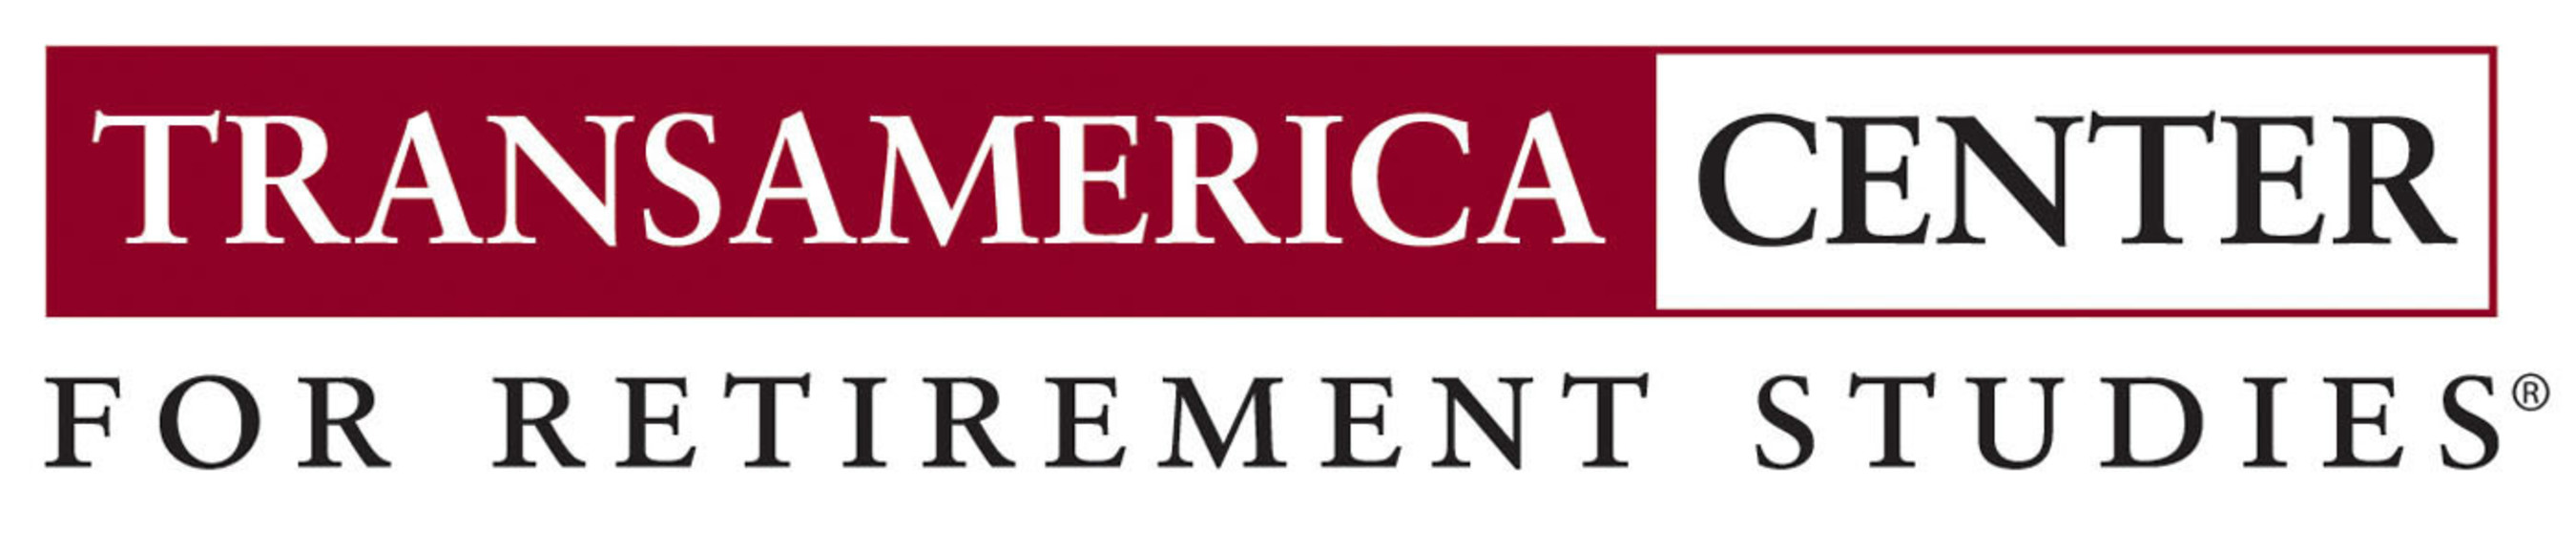 Transamerica Center for Retirement Studies logo